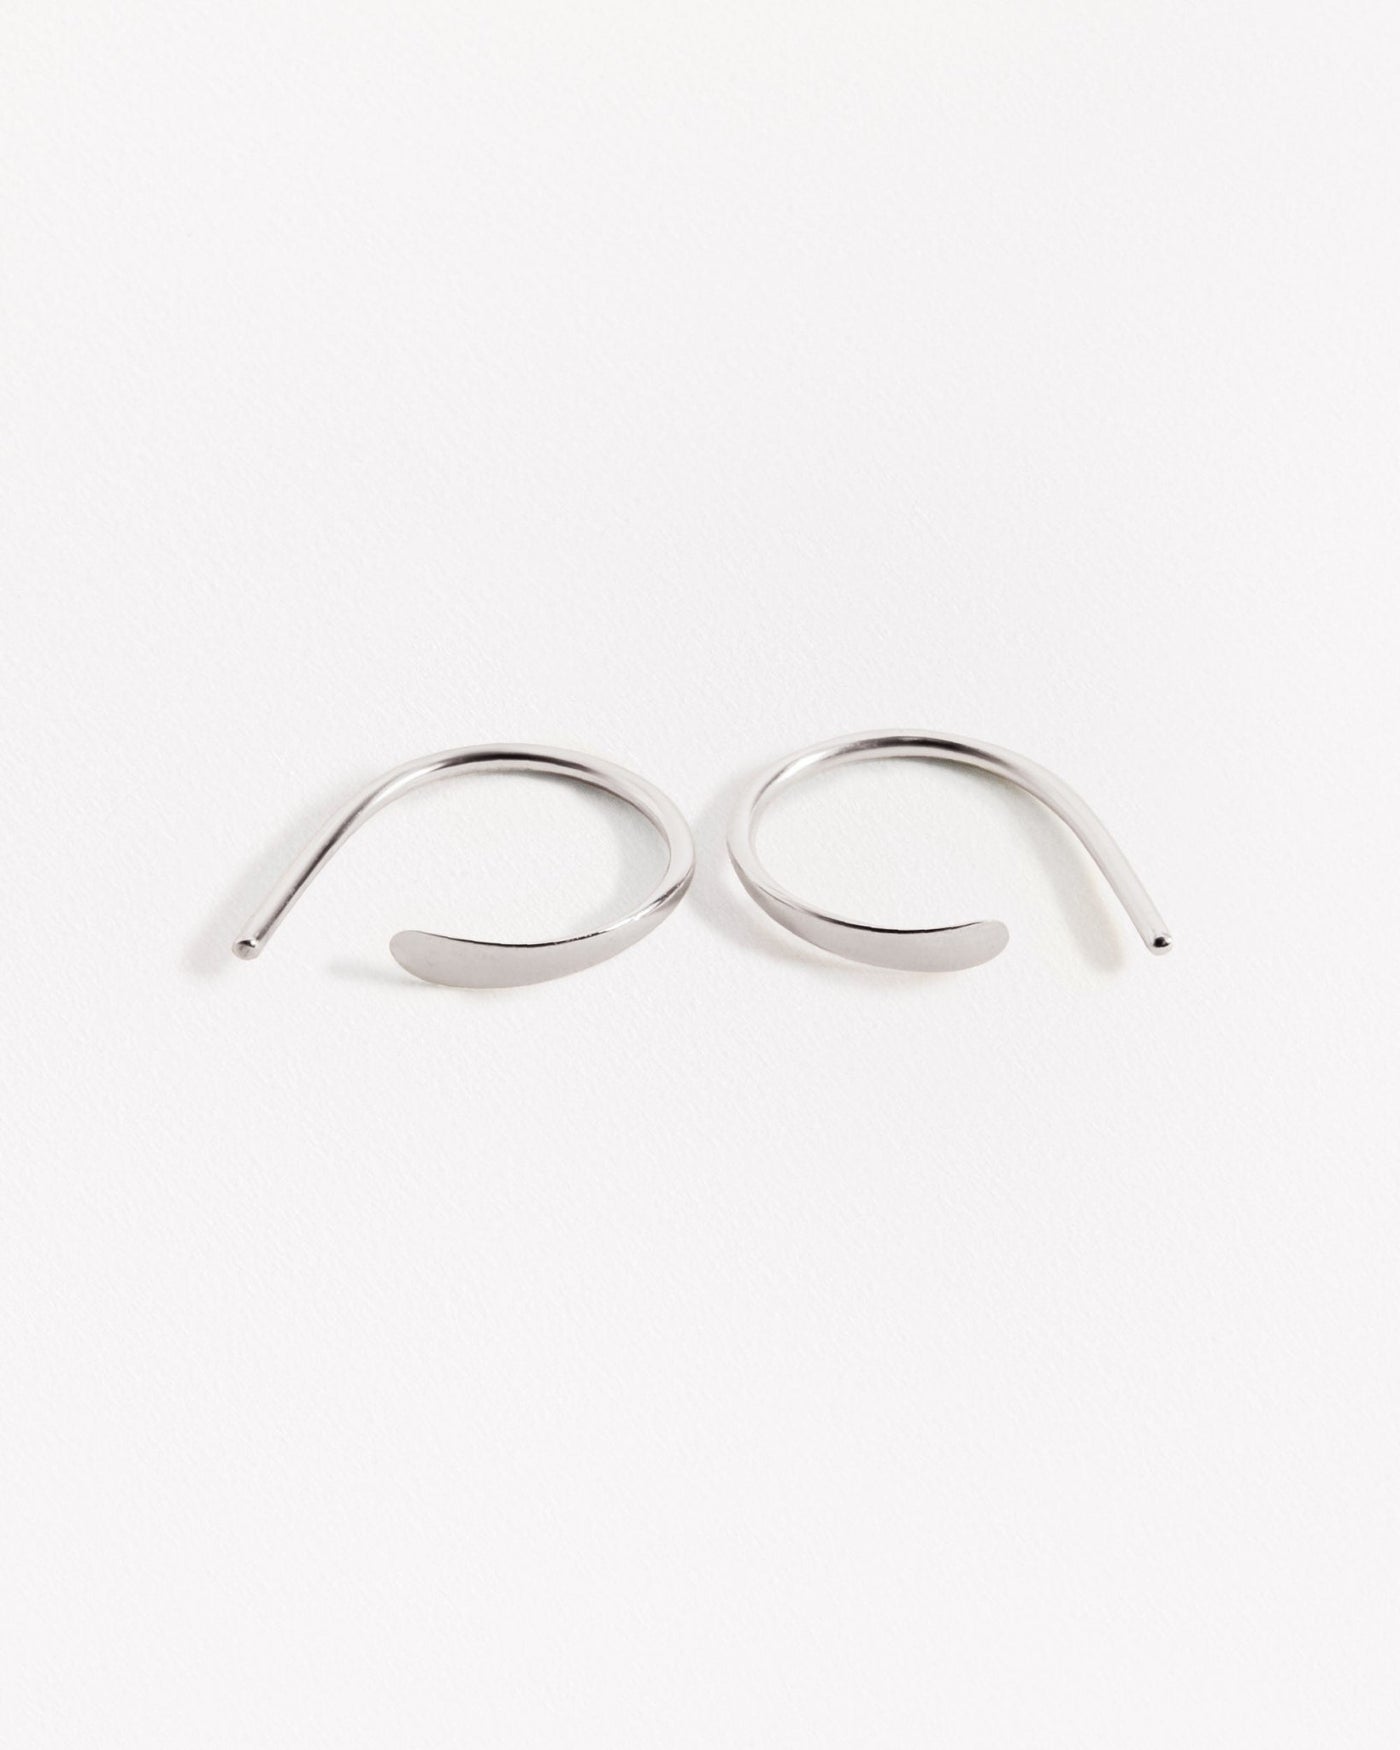 Noe Hoop Earrings - 925 Sterling SilverBackUpItemsBest Friend GiftLunai Jewelry